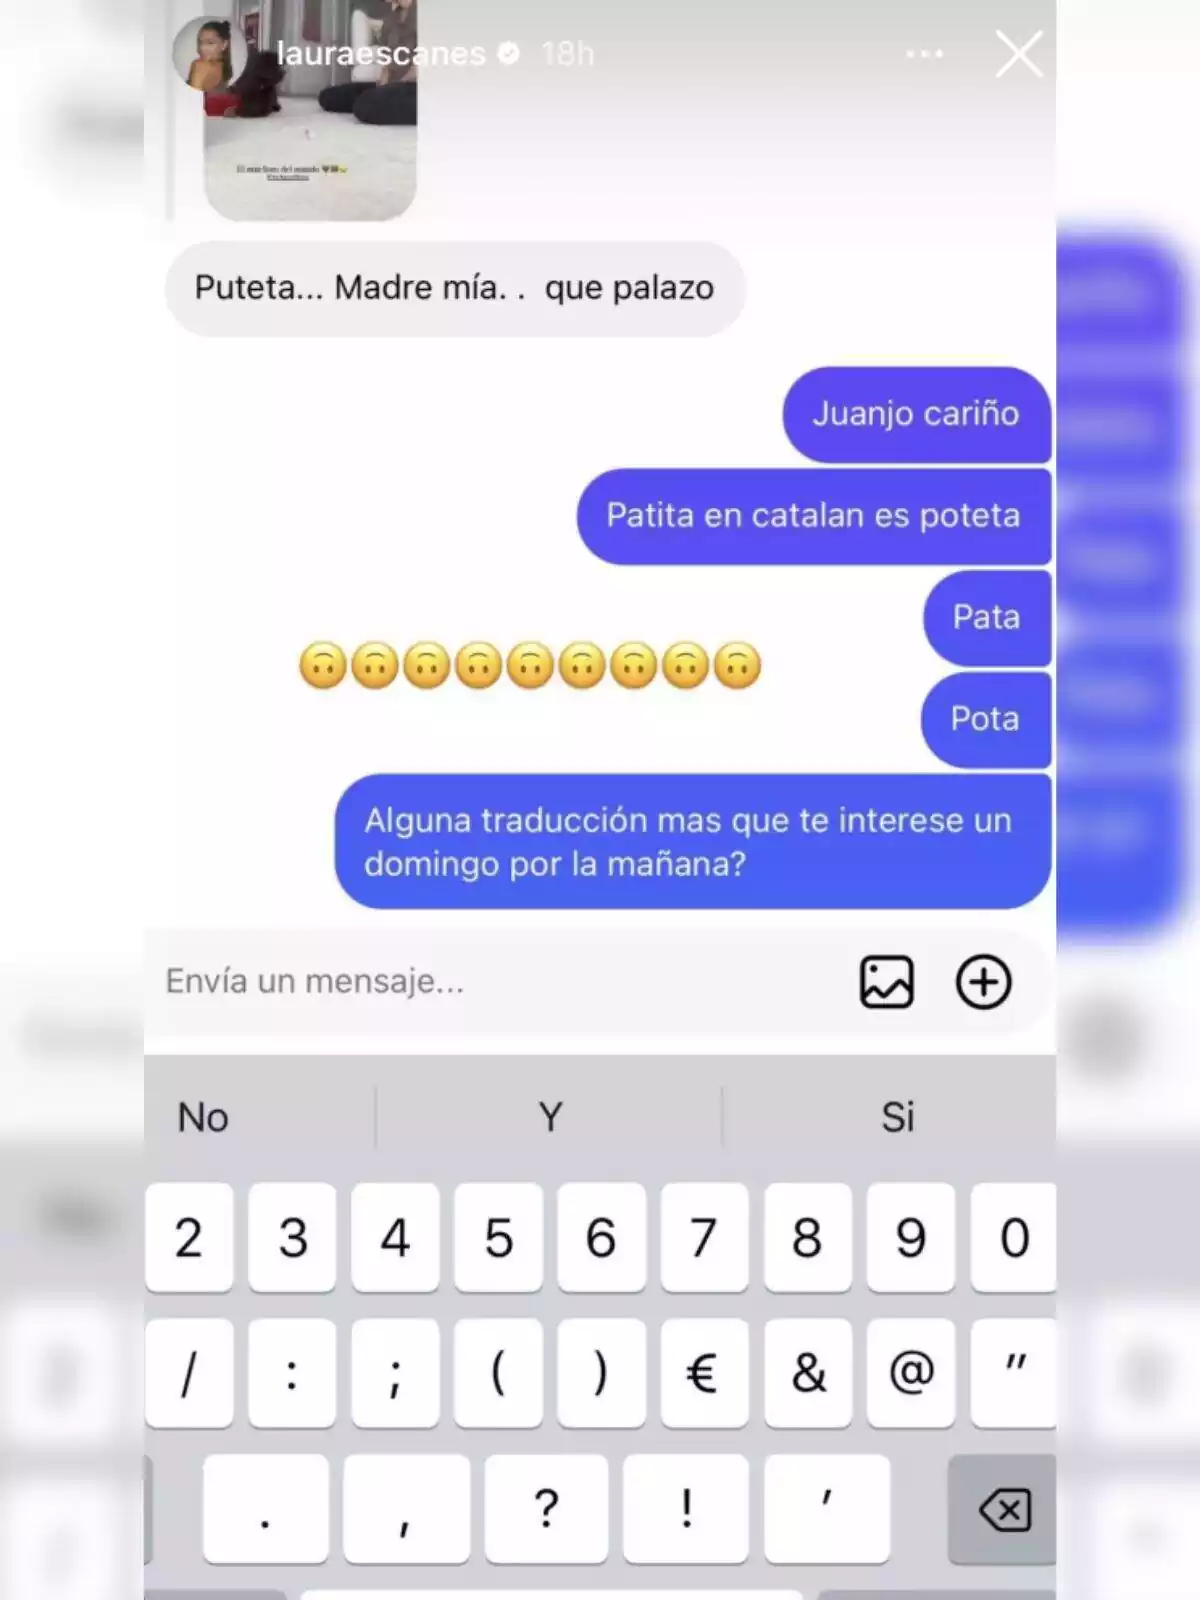 Storie de Laura Escanes en Instagram respondiendo a un seguidor sobre una palabra en catalán